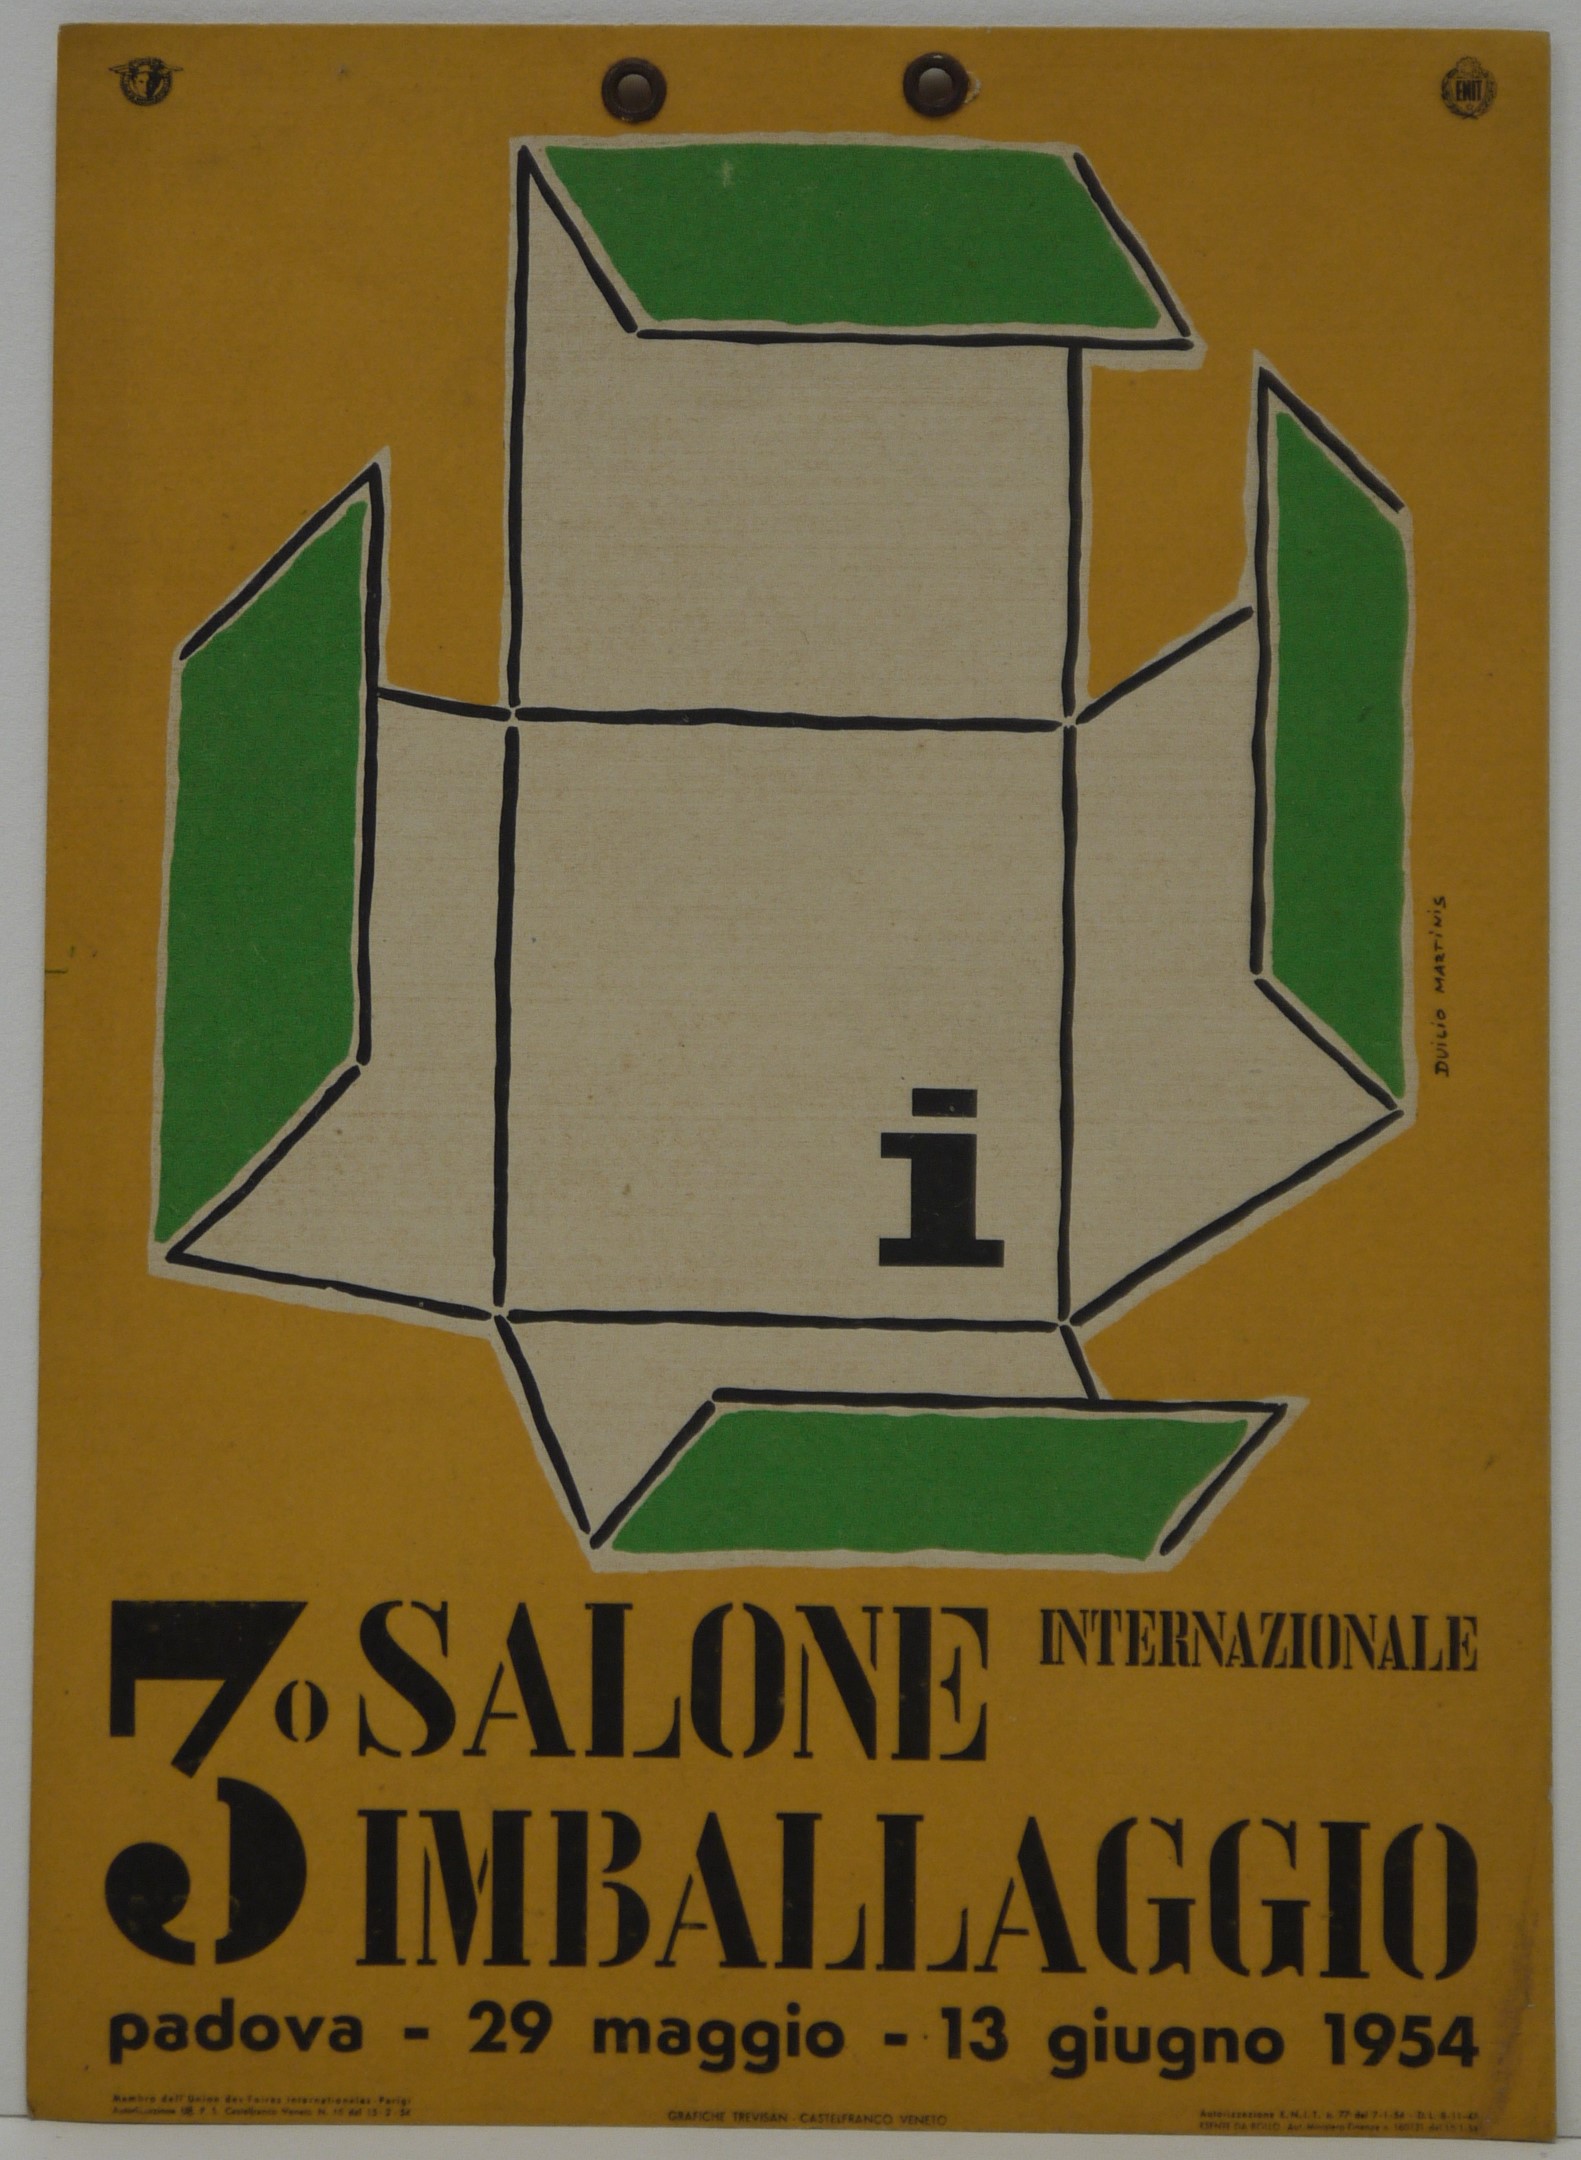 Terzo salone internazionale imballaggio, su fondo arancio, sviluppo di scatola di cartone aperta (locandina) di Martinis Duilio - ambito padovano (metà XX)